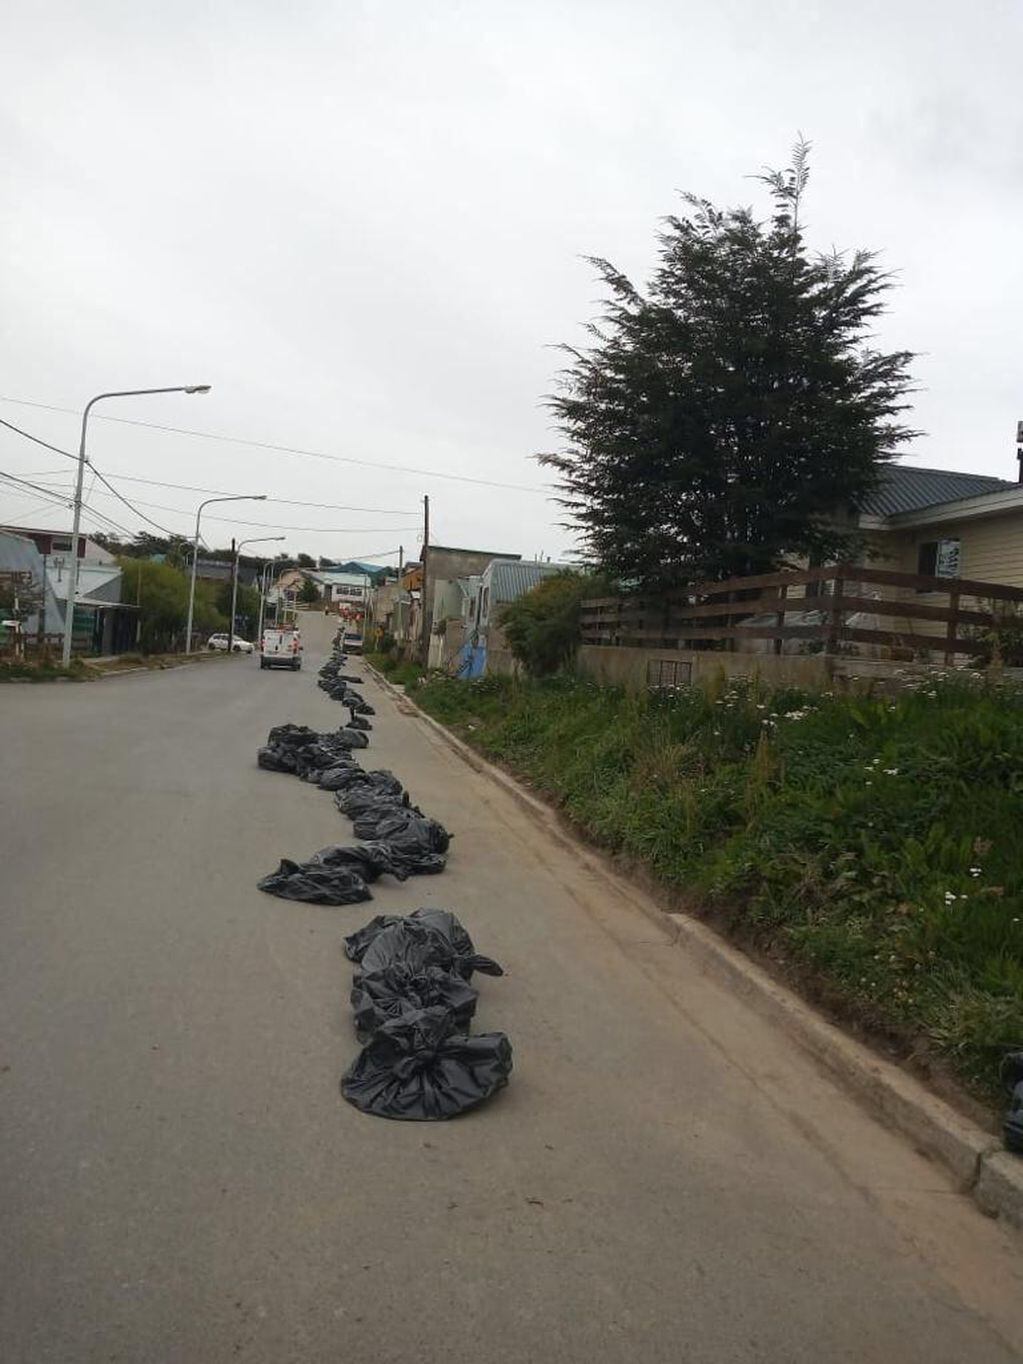 Limpieza y recolección de voluminosos en distintos barrios de la ciudad por parte de la Municipalidad de Ushuaia-